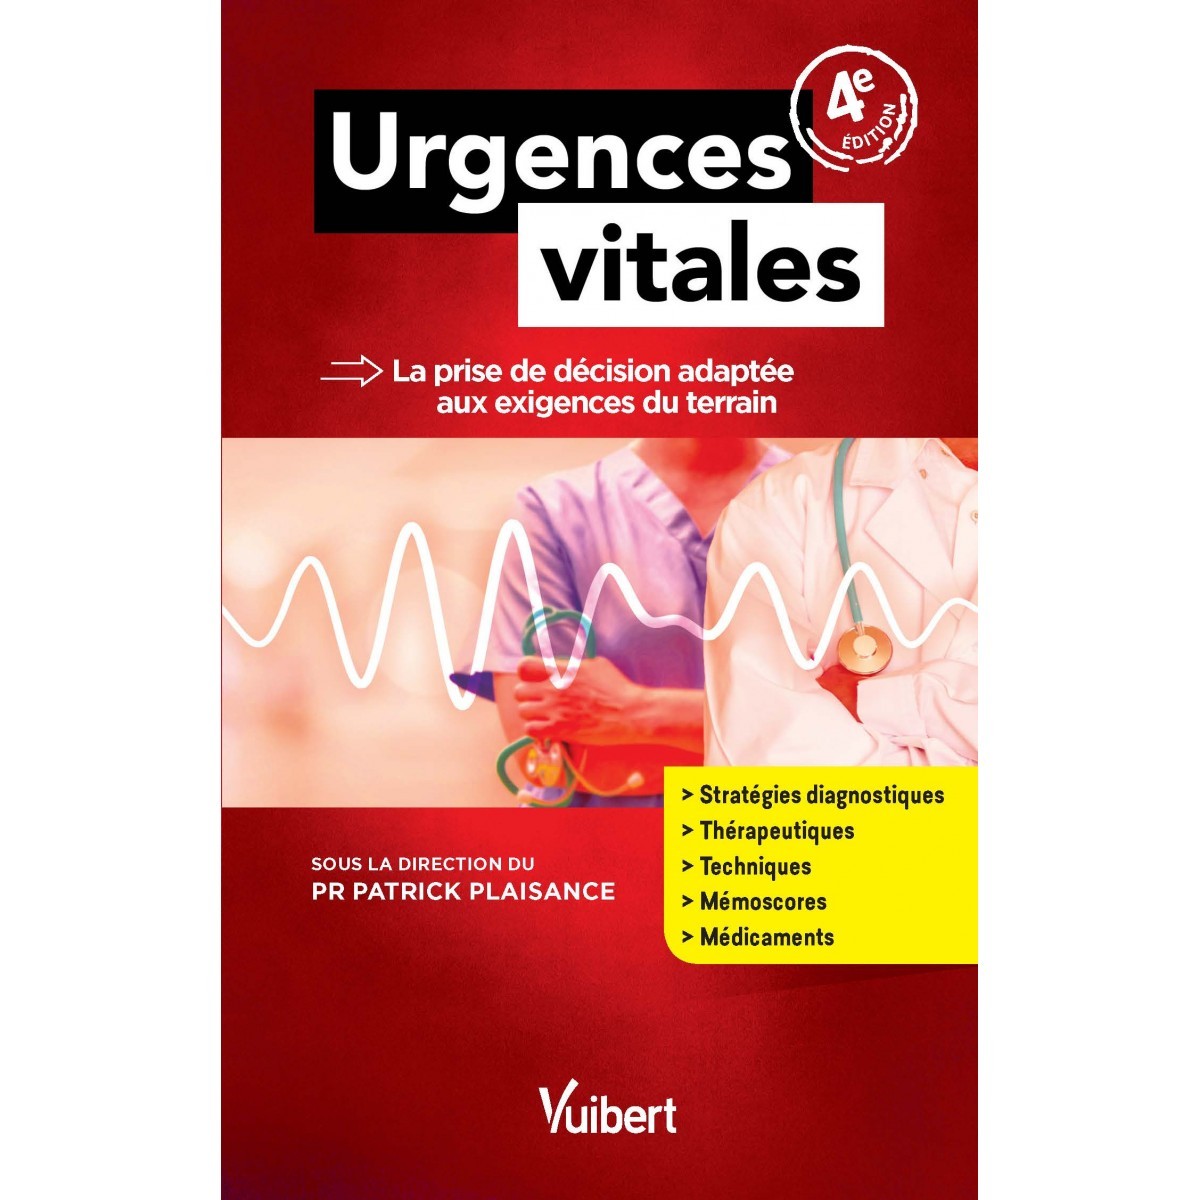 Urgences vitales